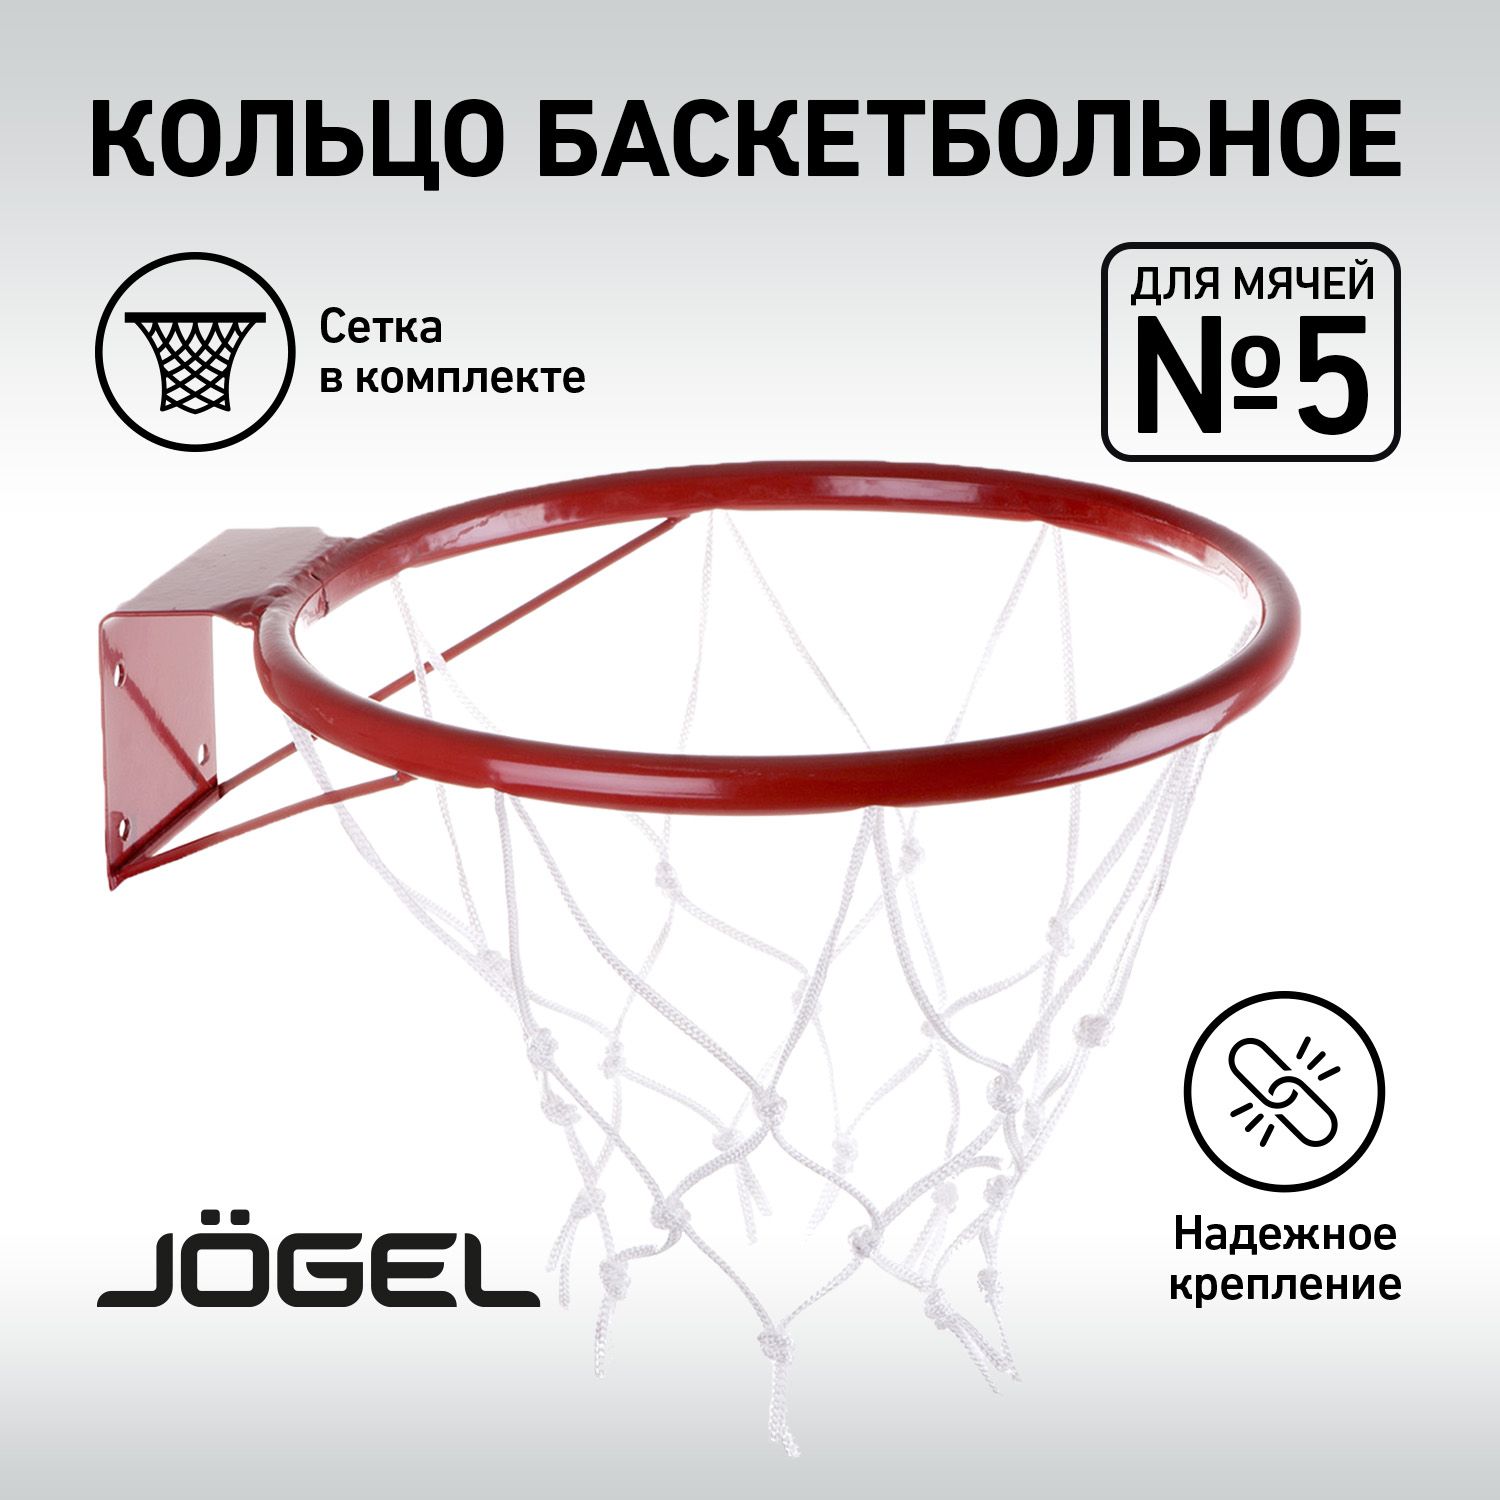 Баскетбольную стойку, щит для баскетбола с кольцом купить в Минске на Vishop